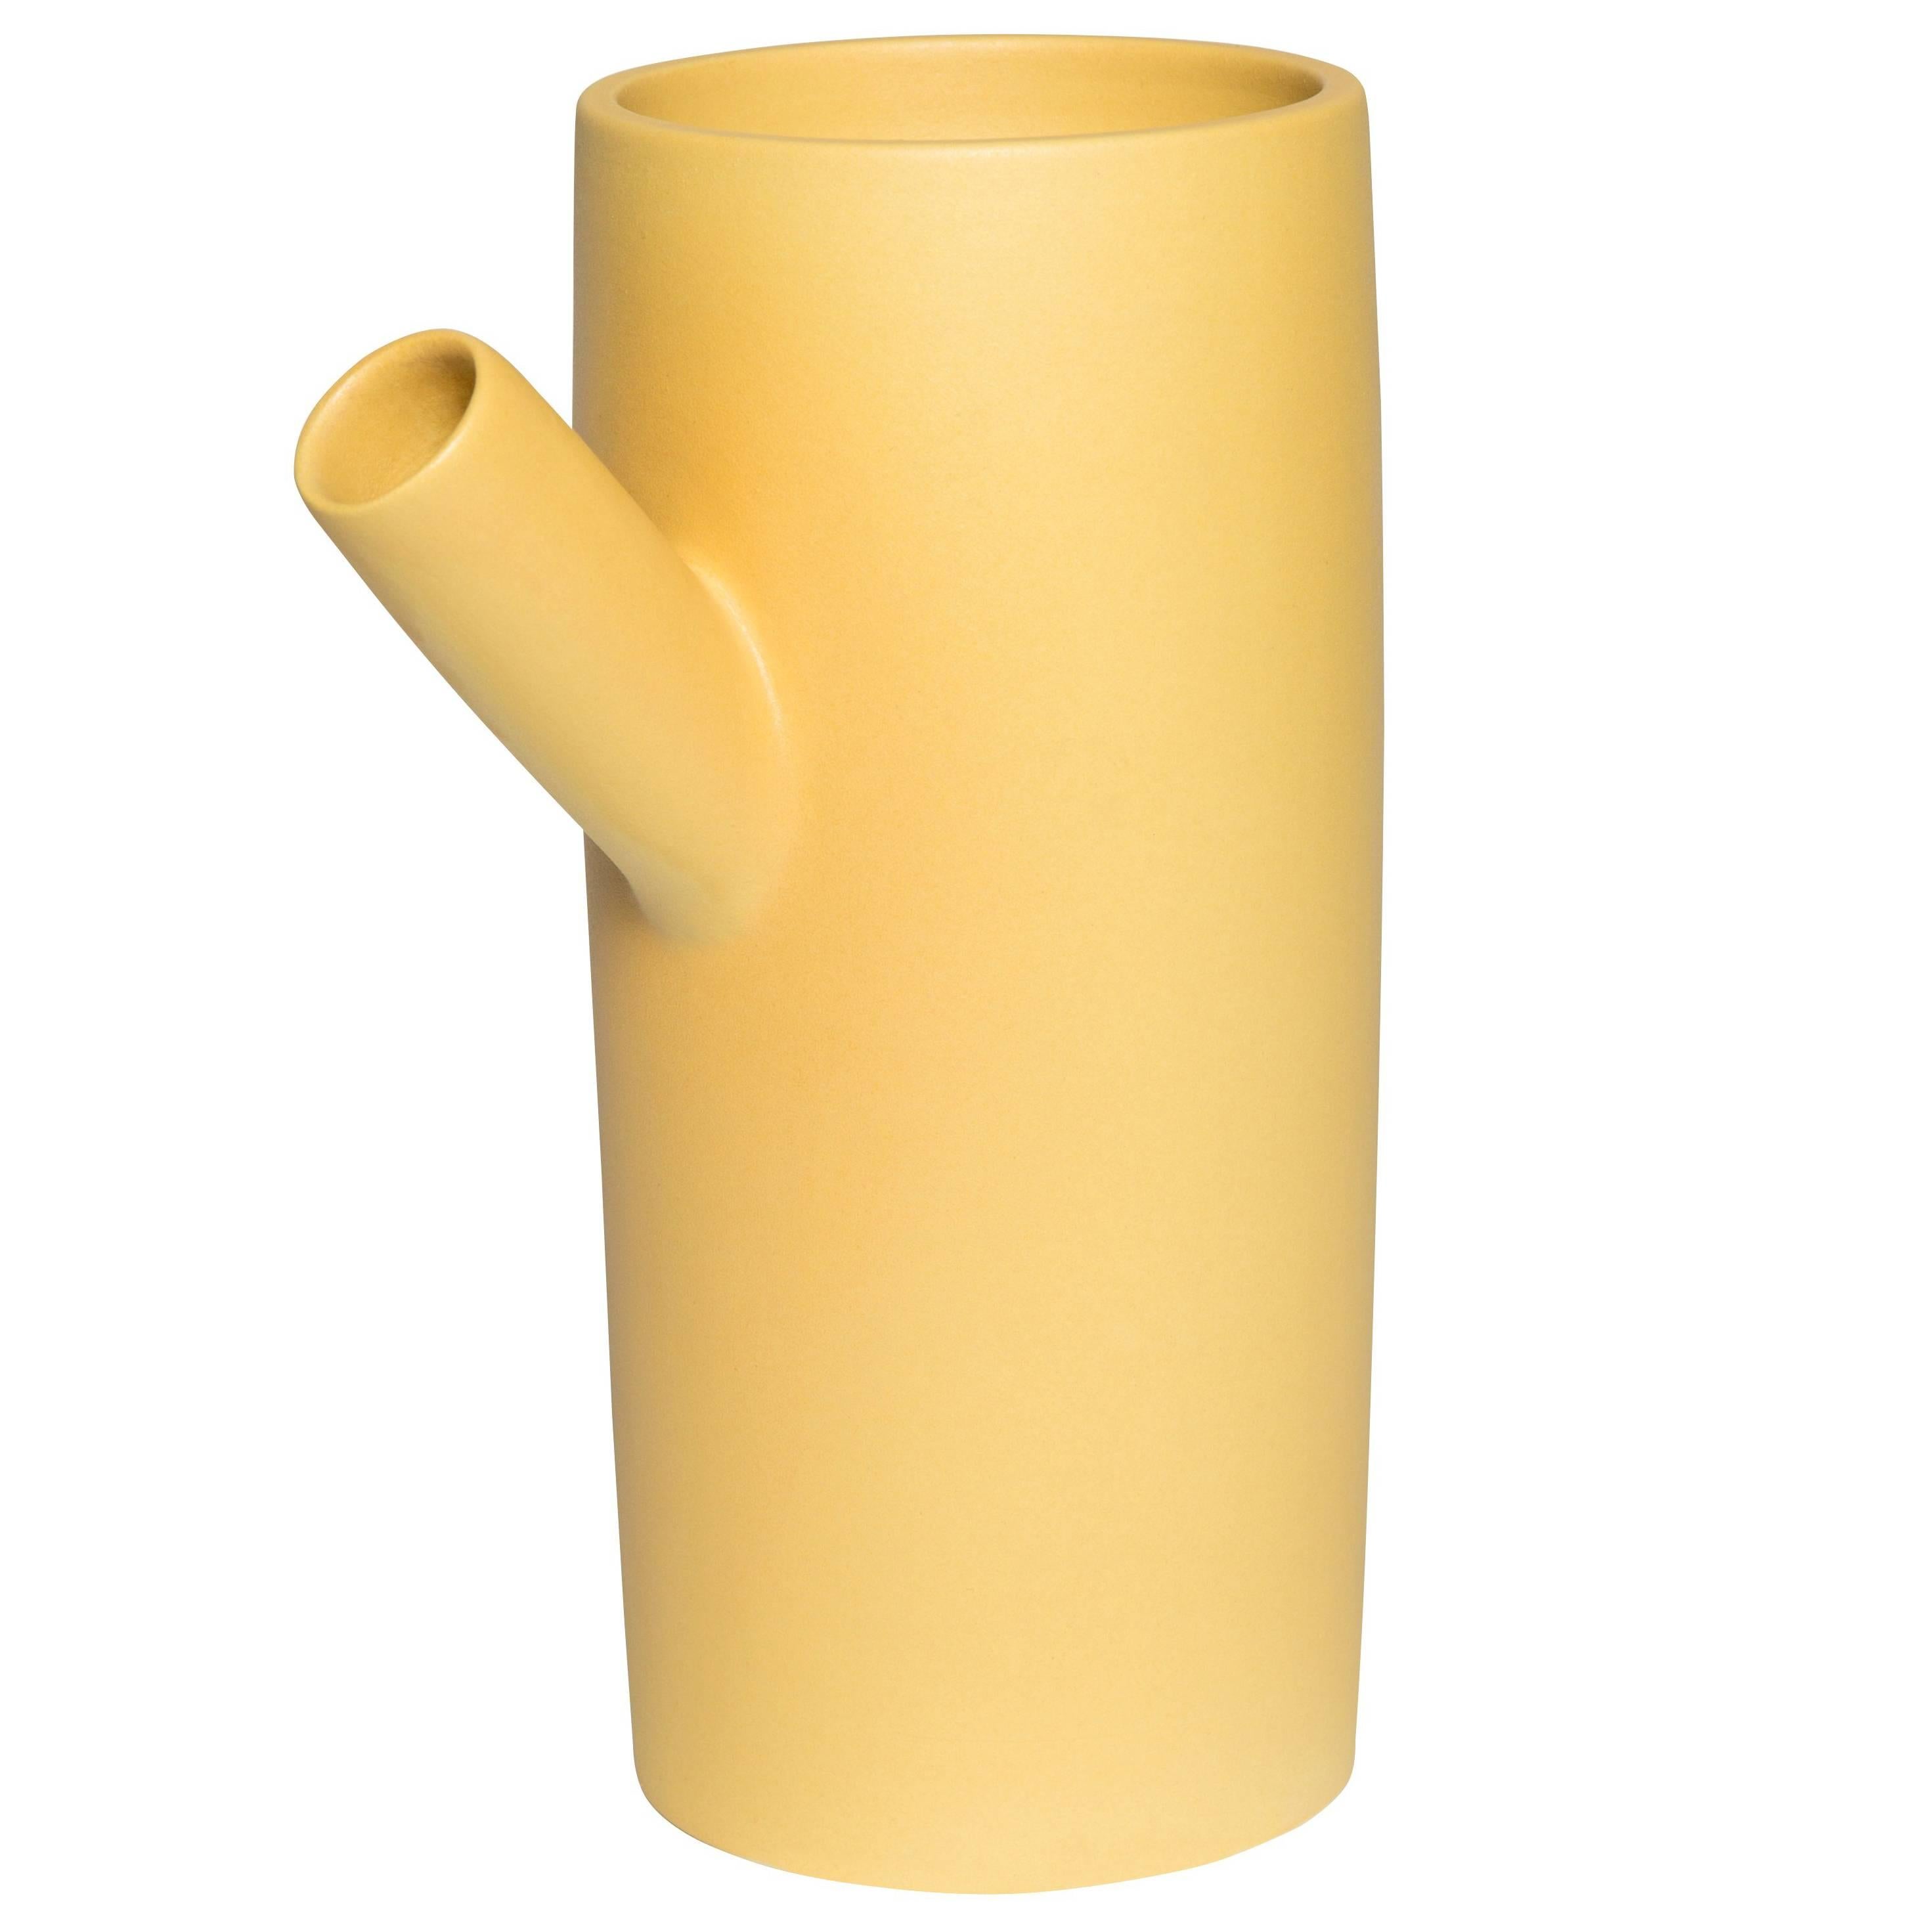  Forsythia Keramik handgefertigte Vase von Pieces, moderner anpassbarer gelber Krug